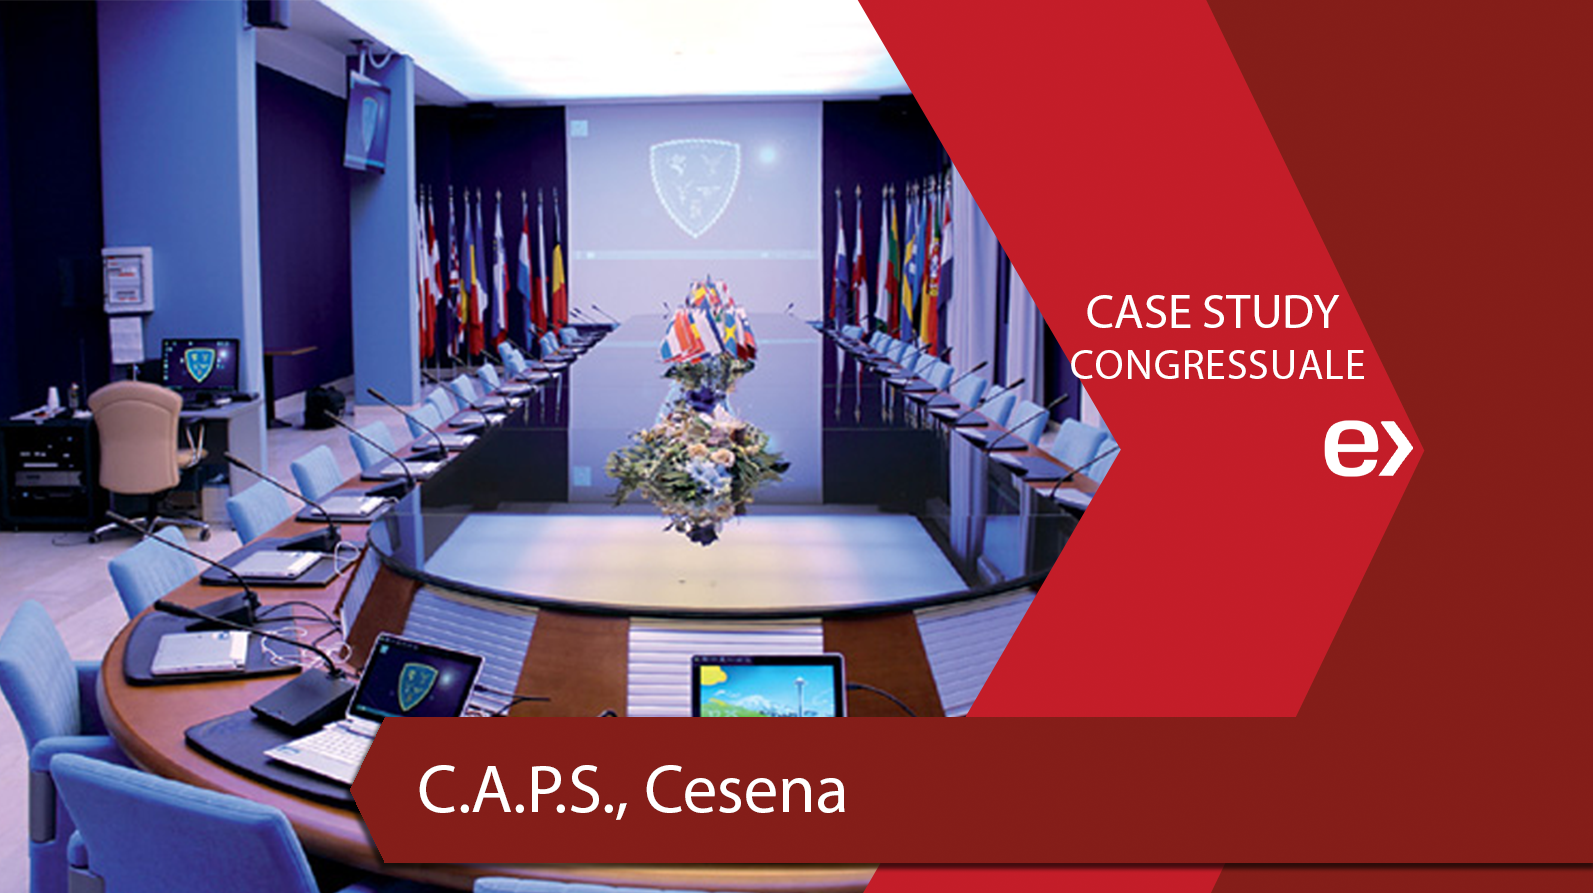 C.A.P.S., Cesena